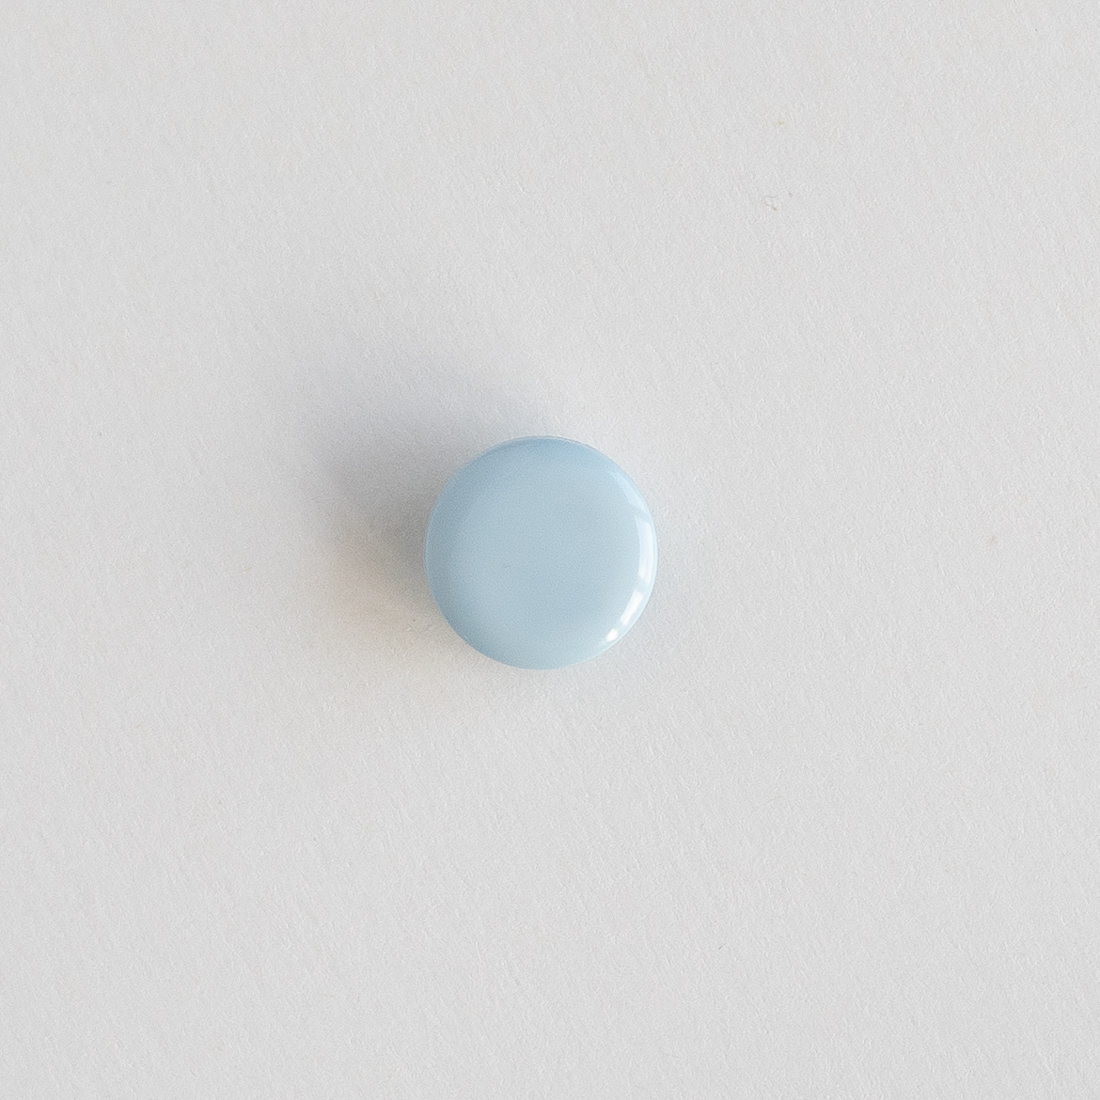  - Blue kids button | Blue shank button - by HipKnitShop - 02/10/2019